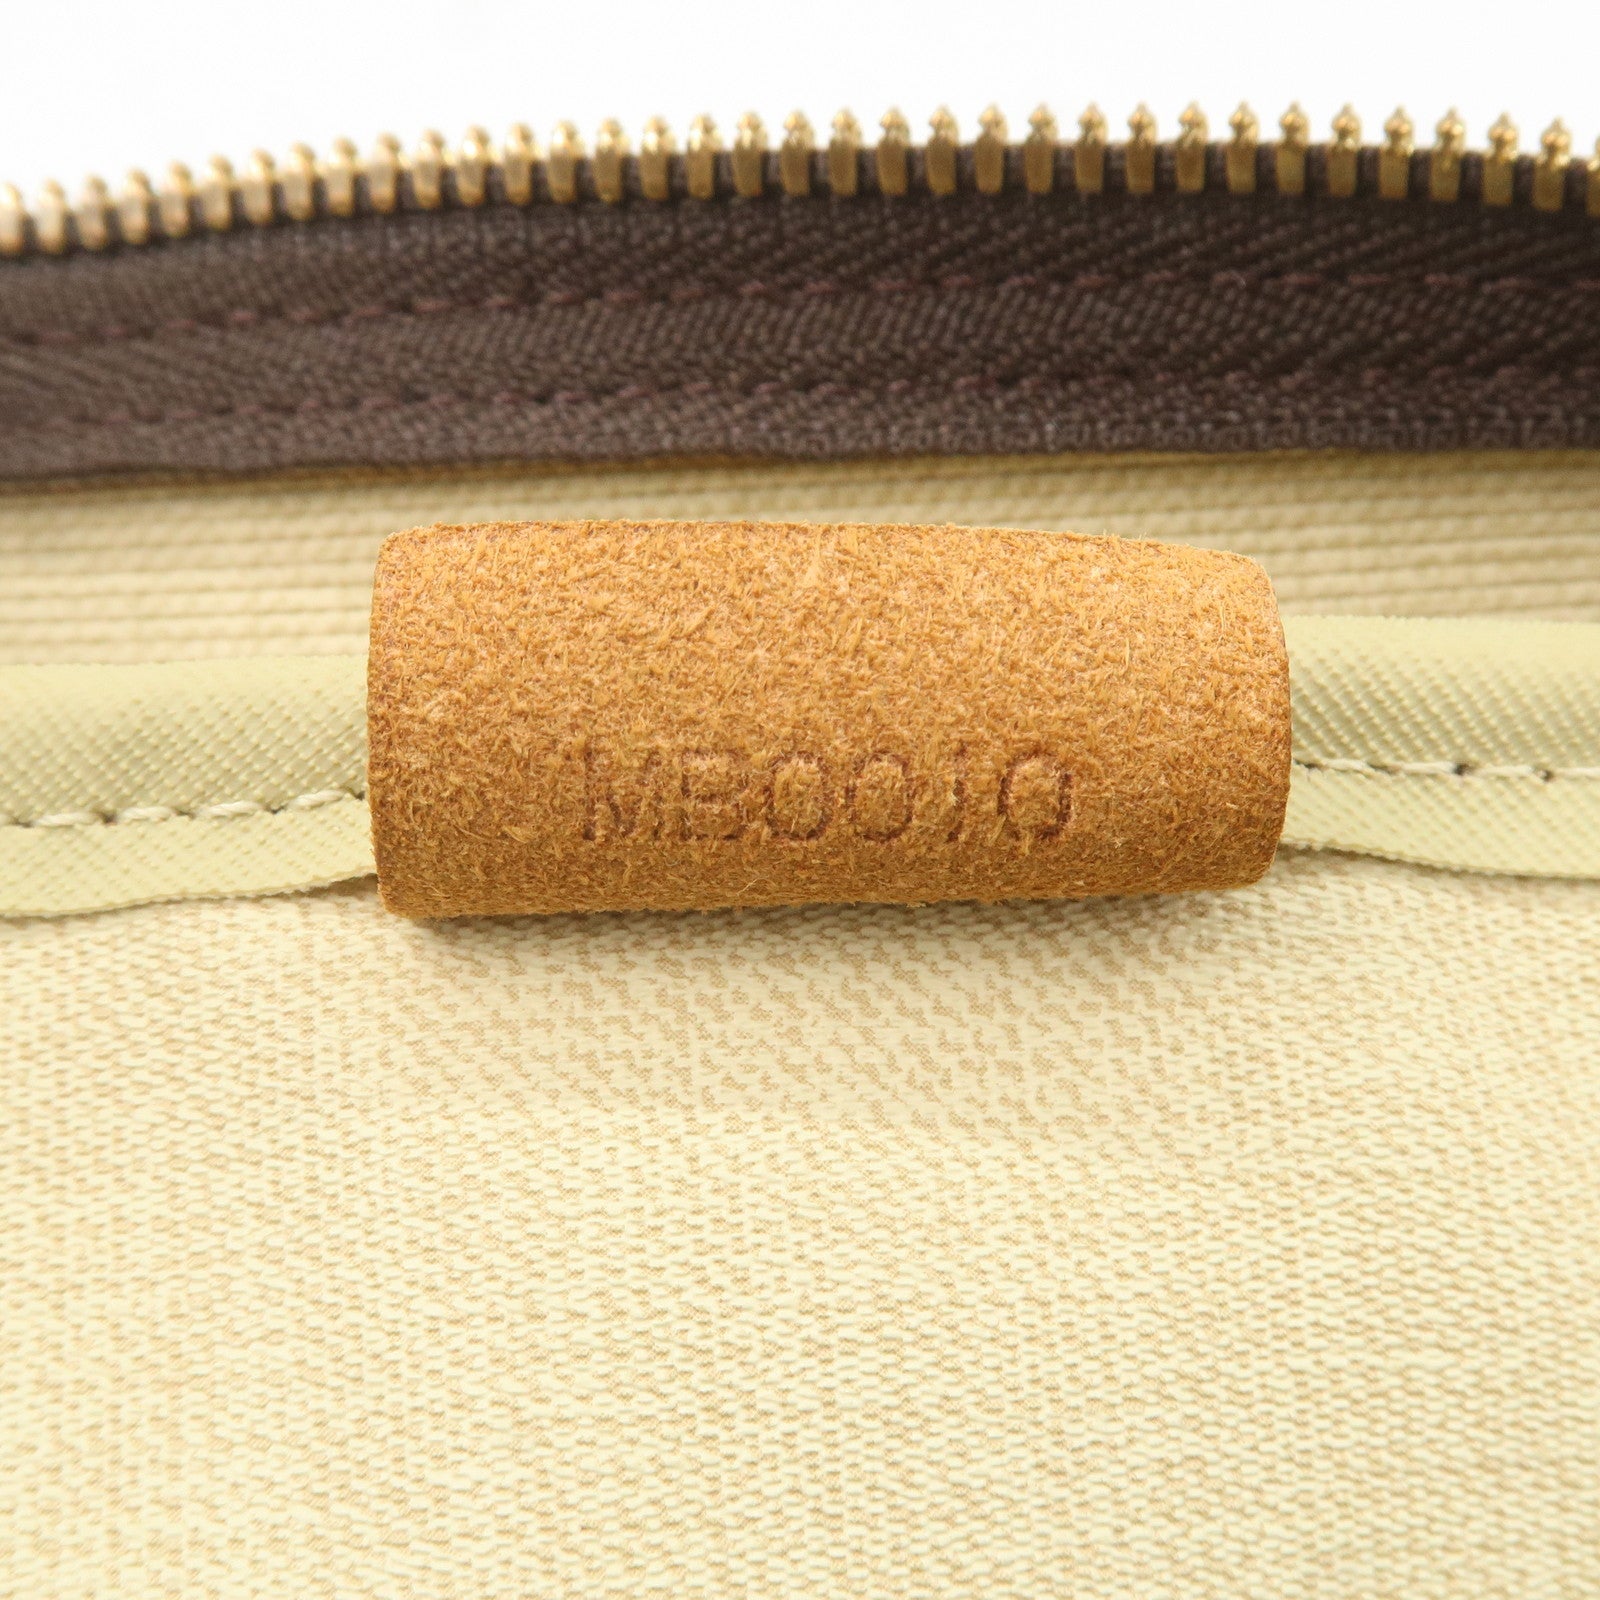 Deauville cloth handbag Louis Vuitton Brown in Cloth - 36533147